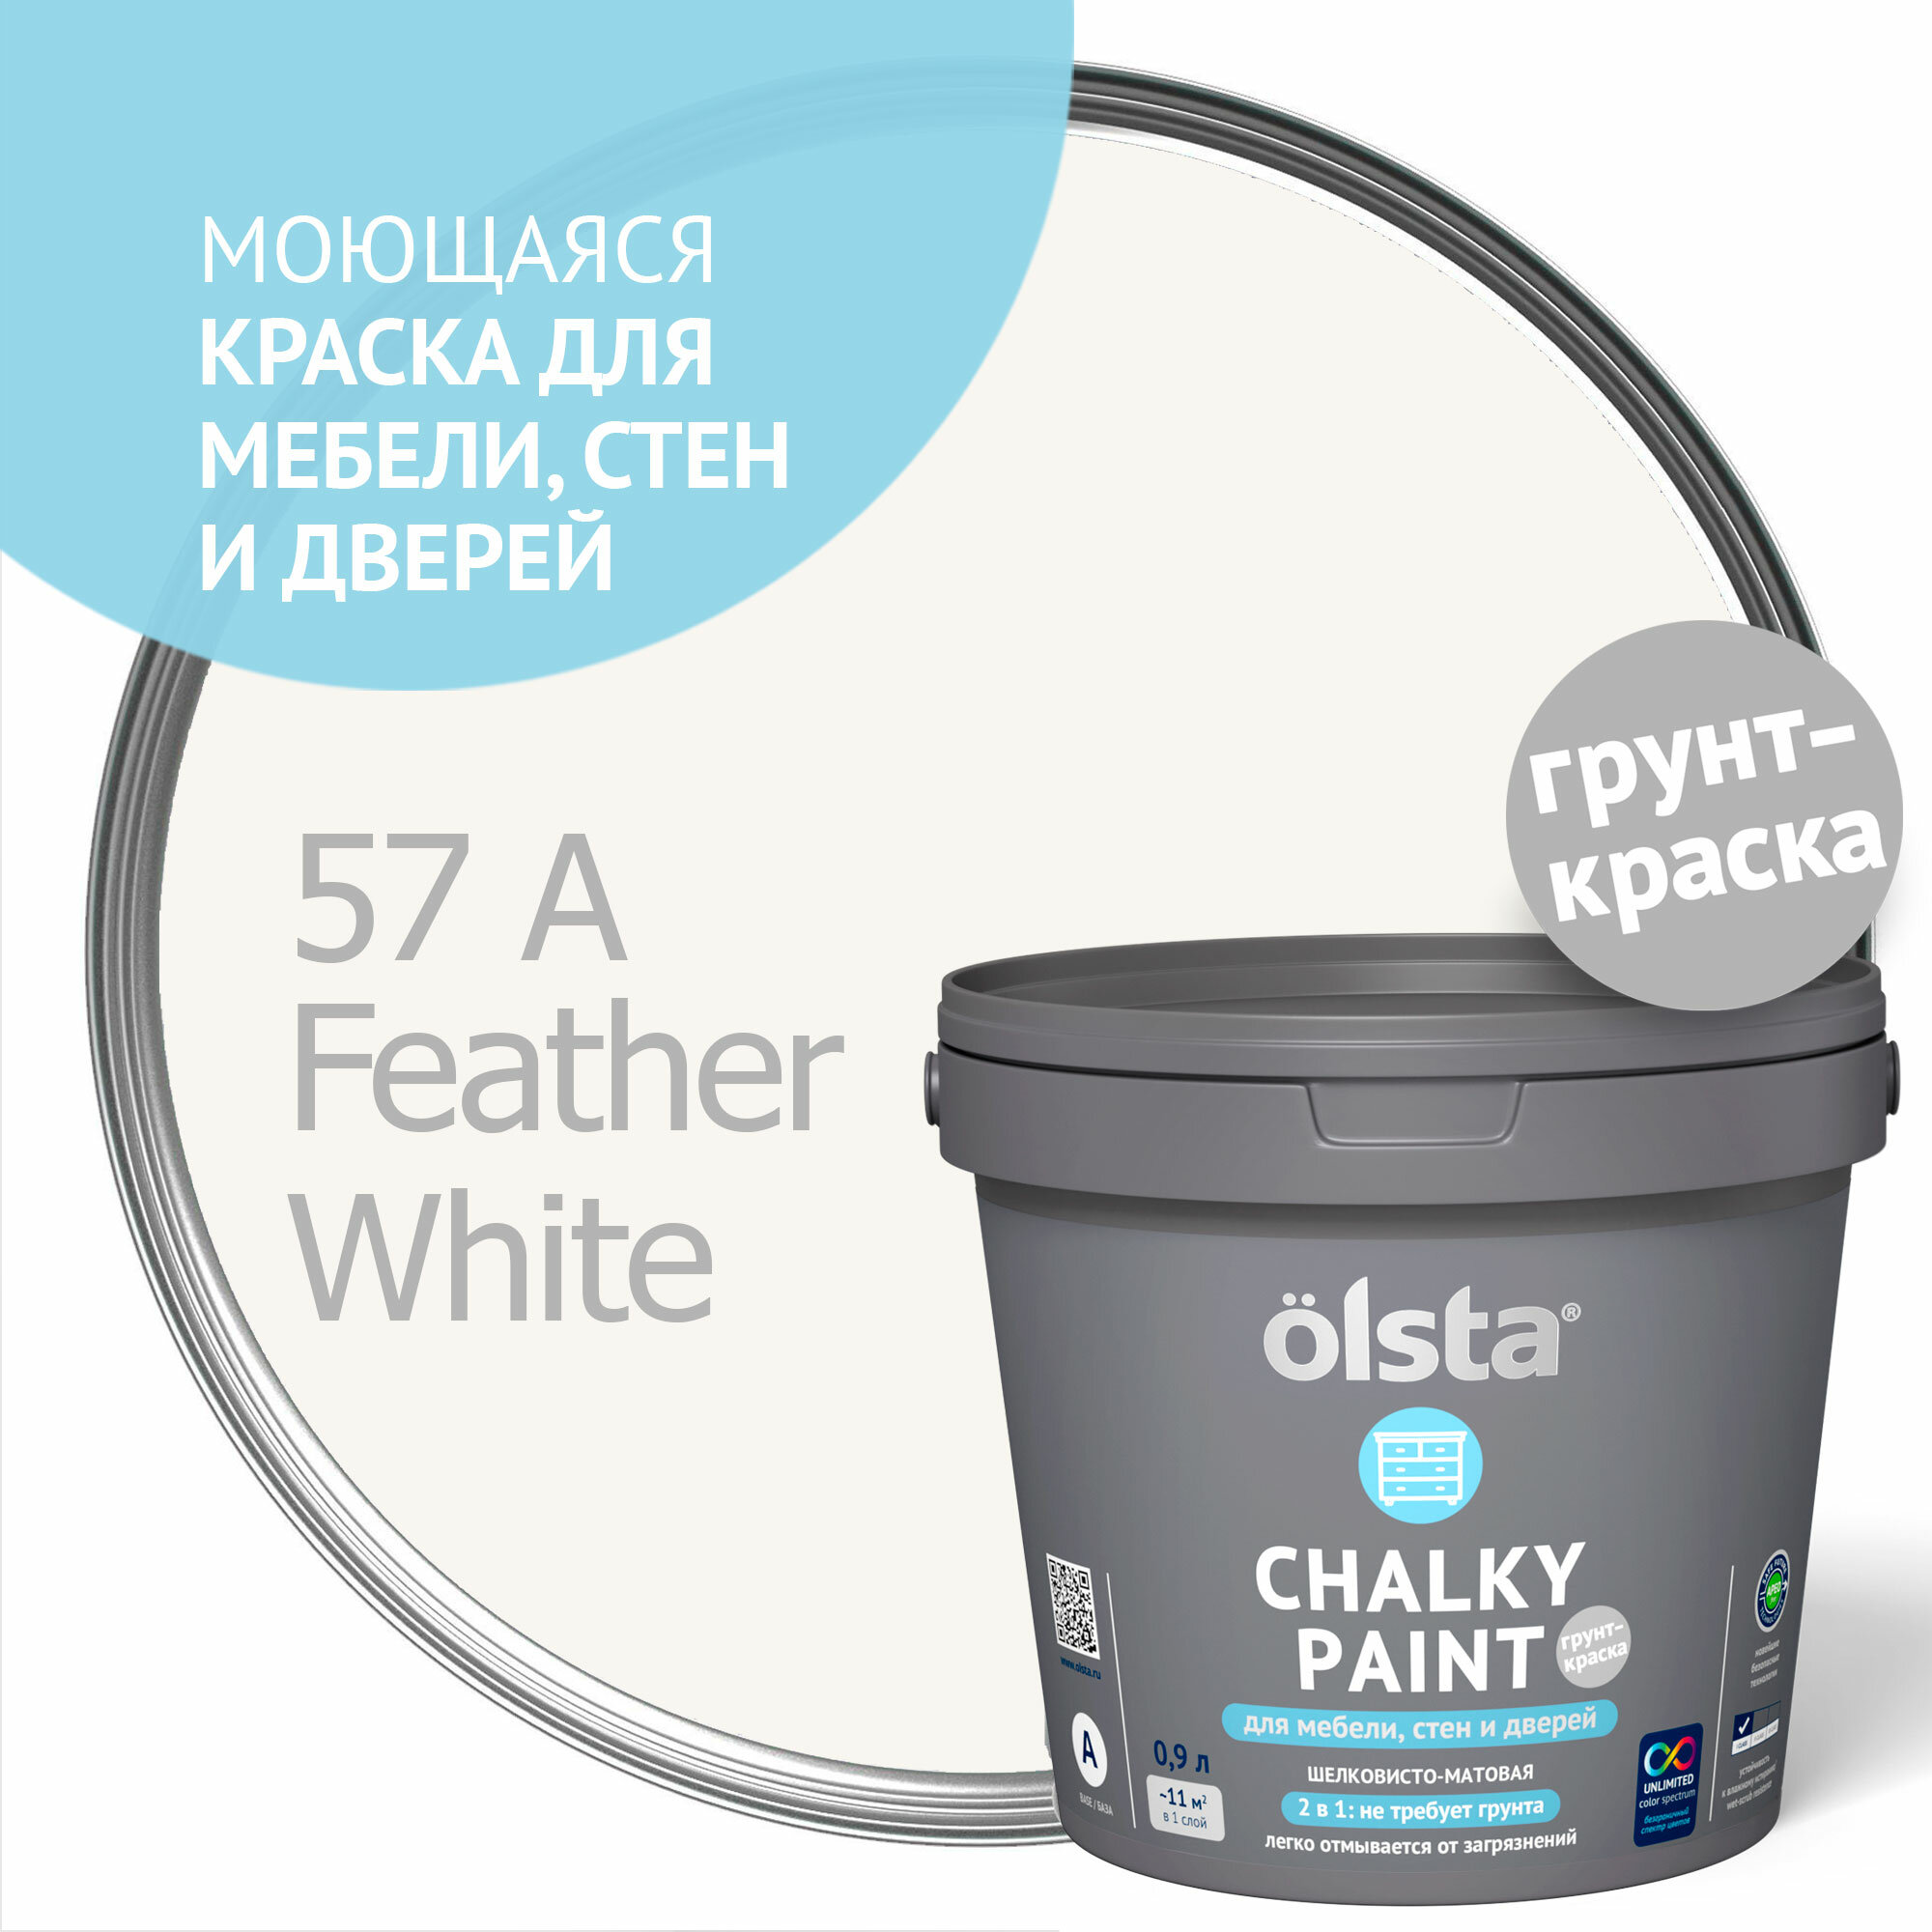 Краска для мебели, стен и дверей Olsta Chalky Paint, белое перо, 0,9 л